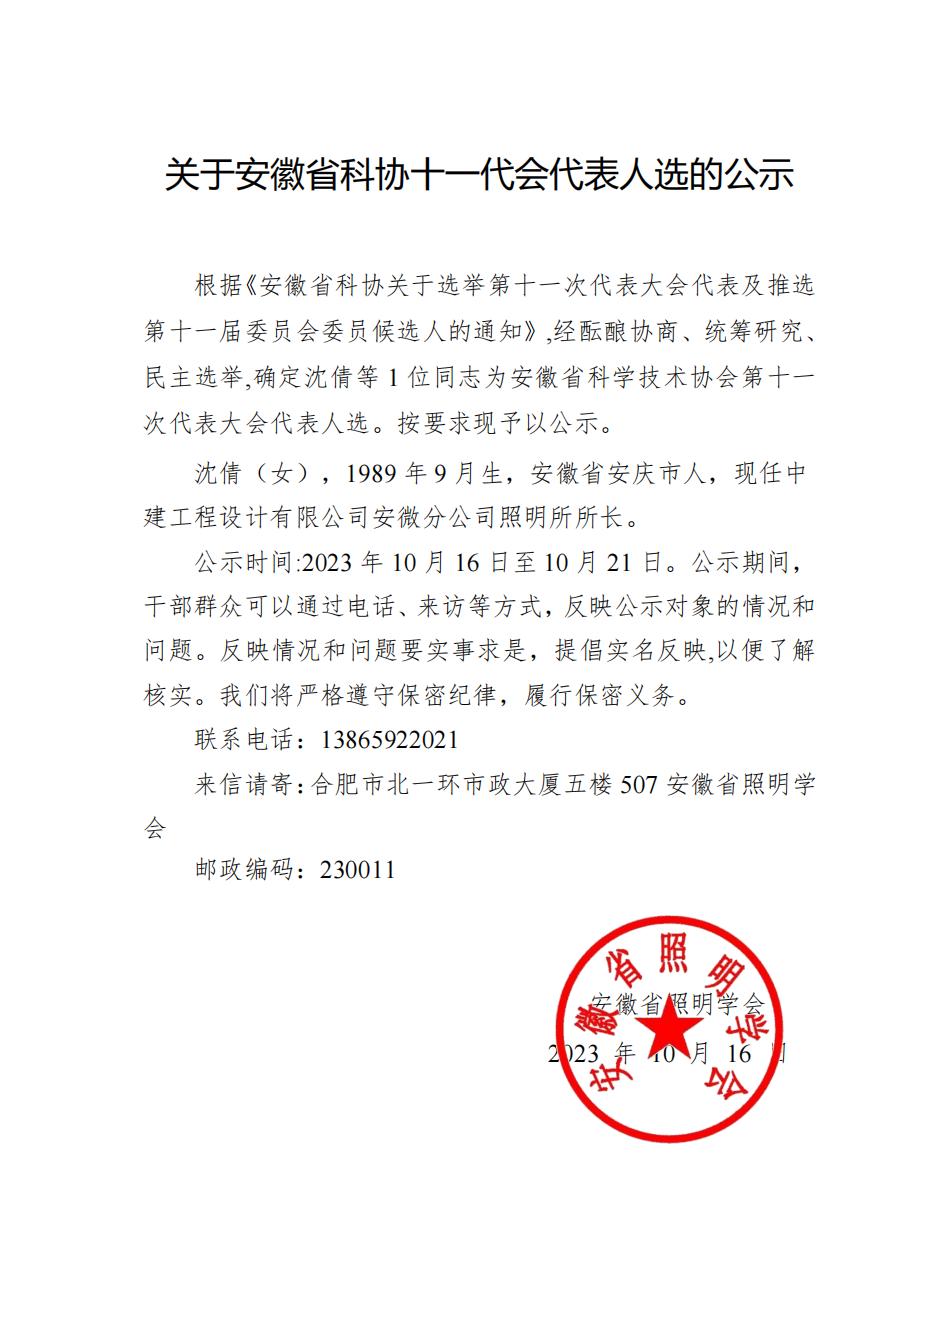 关于安徽省科协十一代会代表人选的公示(2)_00.jpg